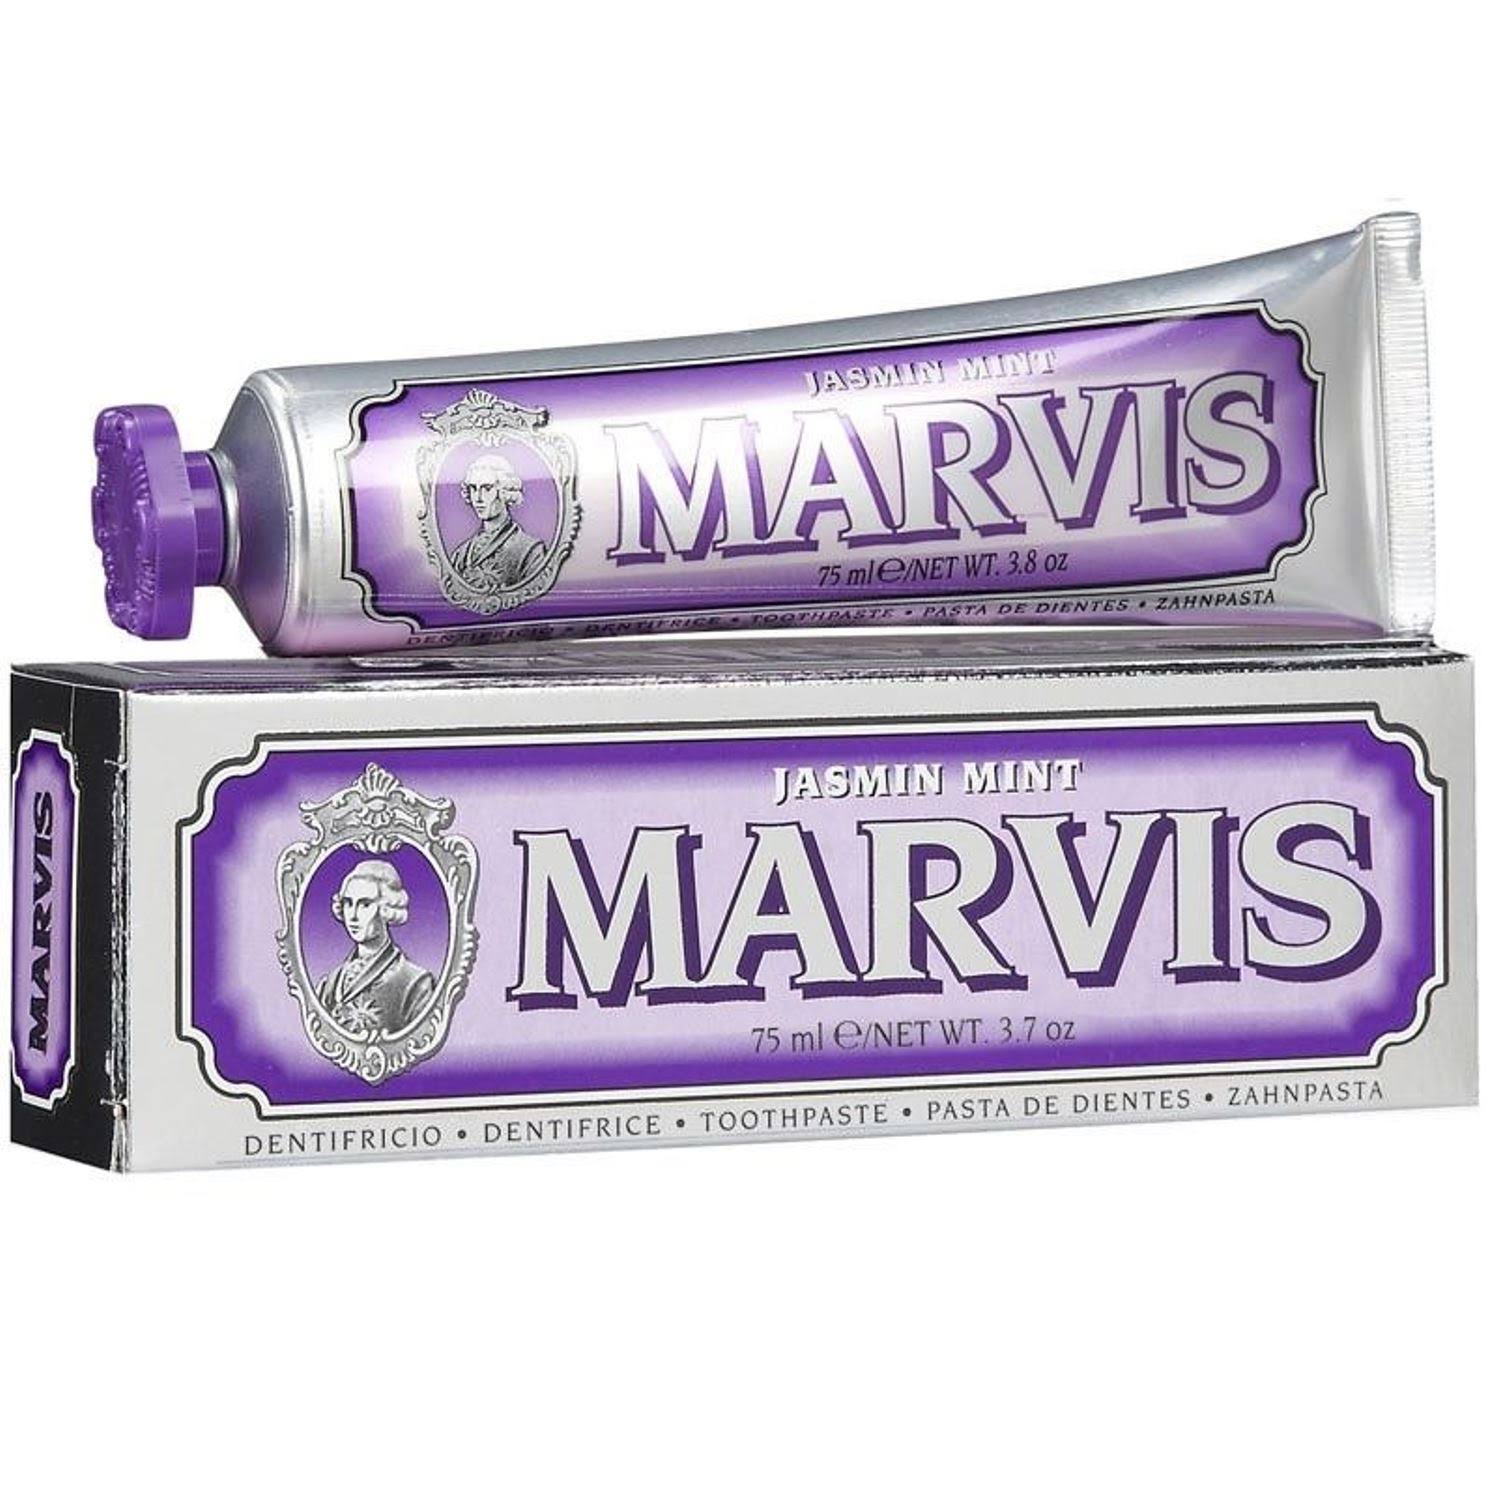 Marvis Toothpaste - Jasmin Mint, 75ml